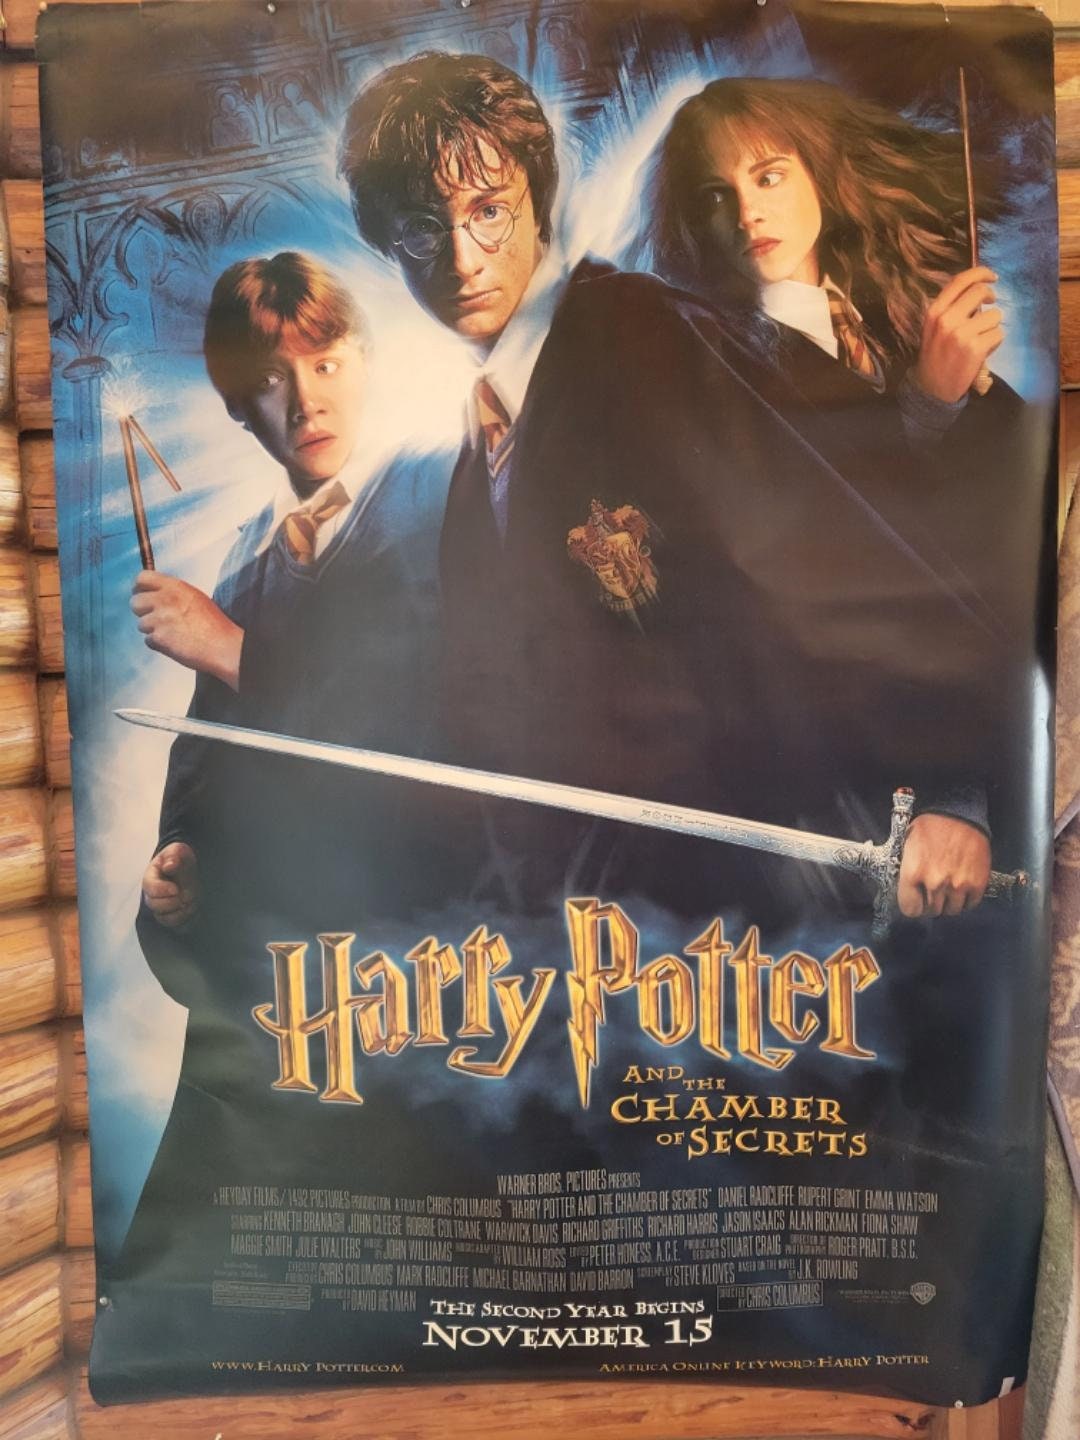 Harry Potter™ Cámara secreta Póster